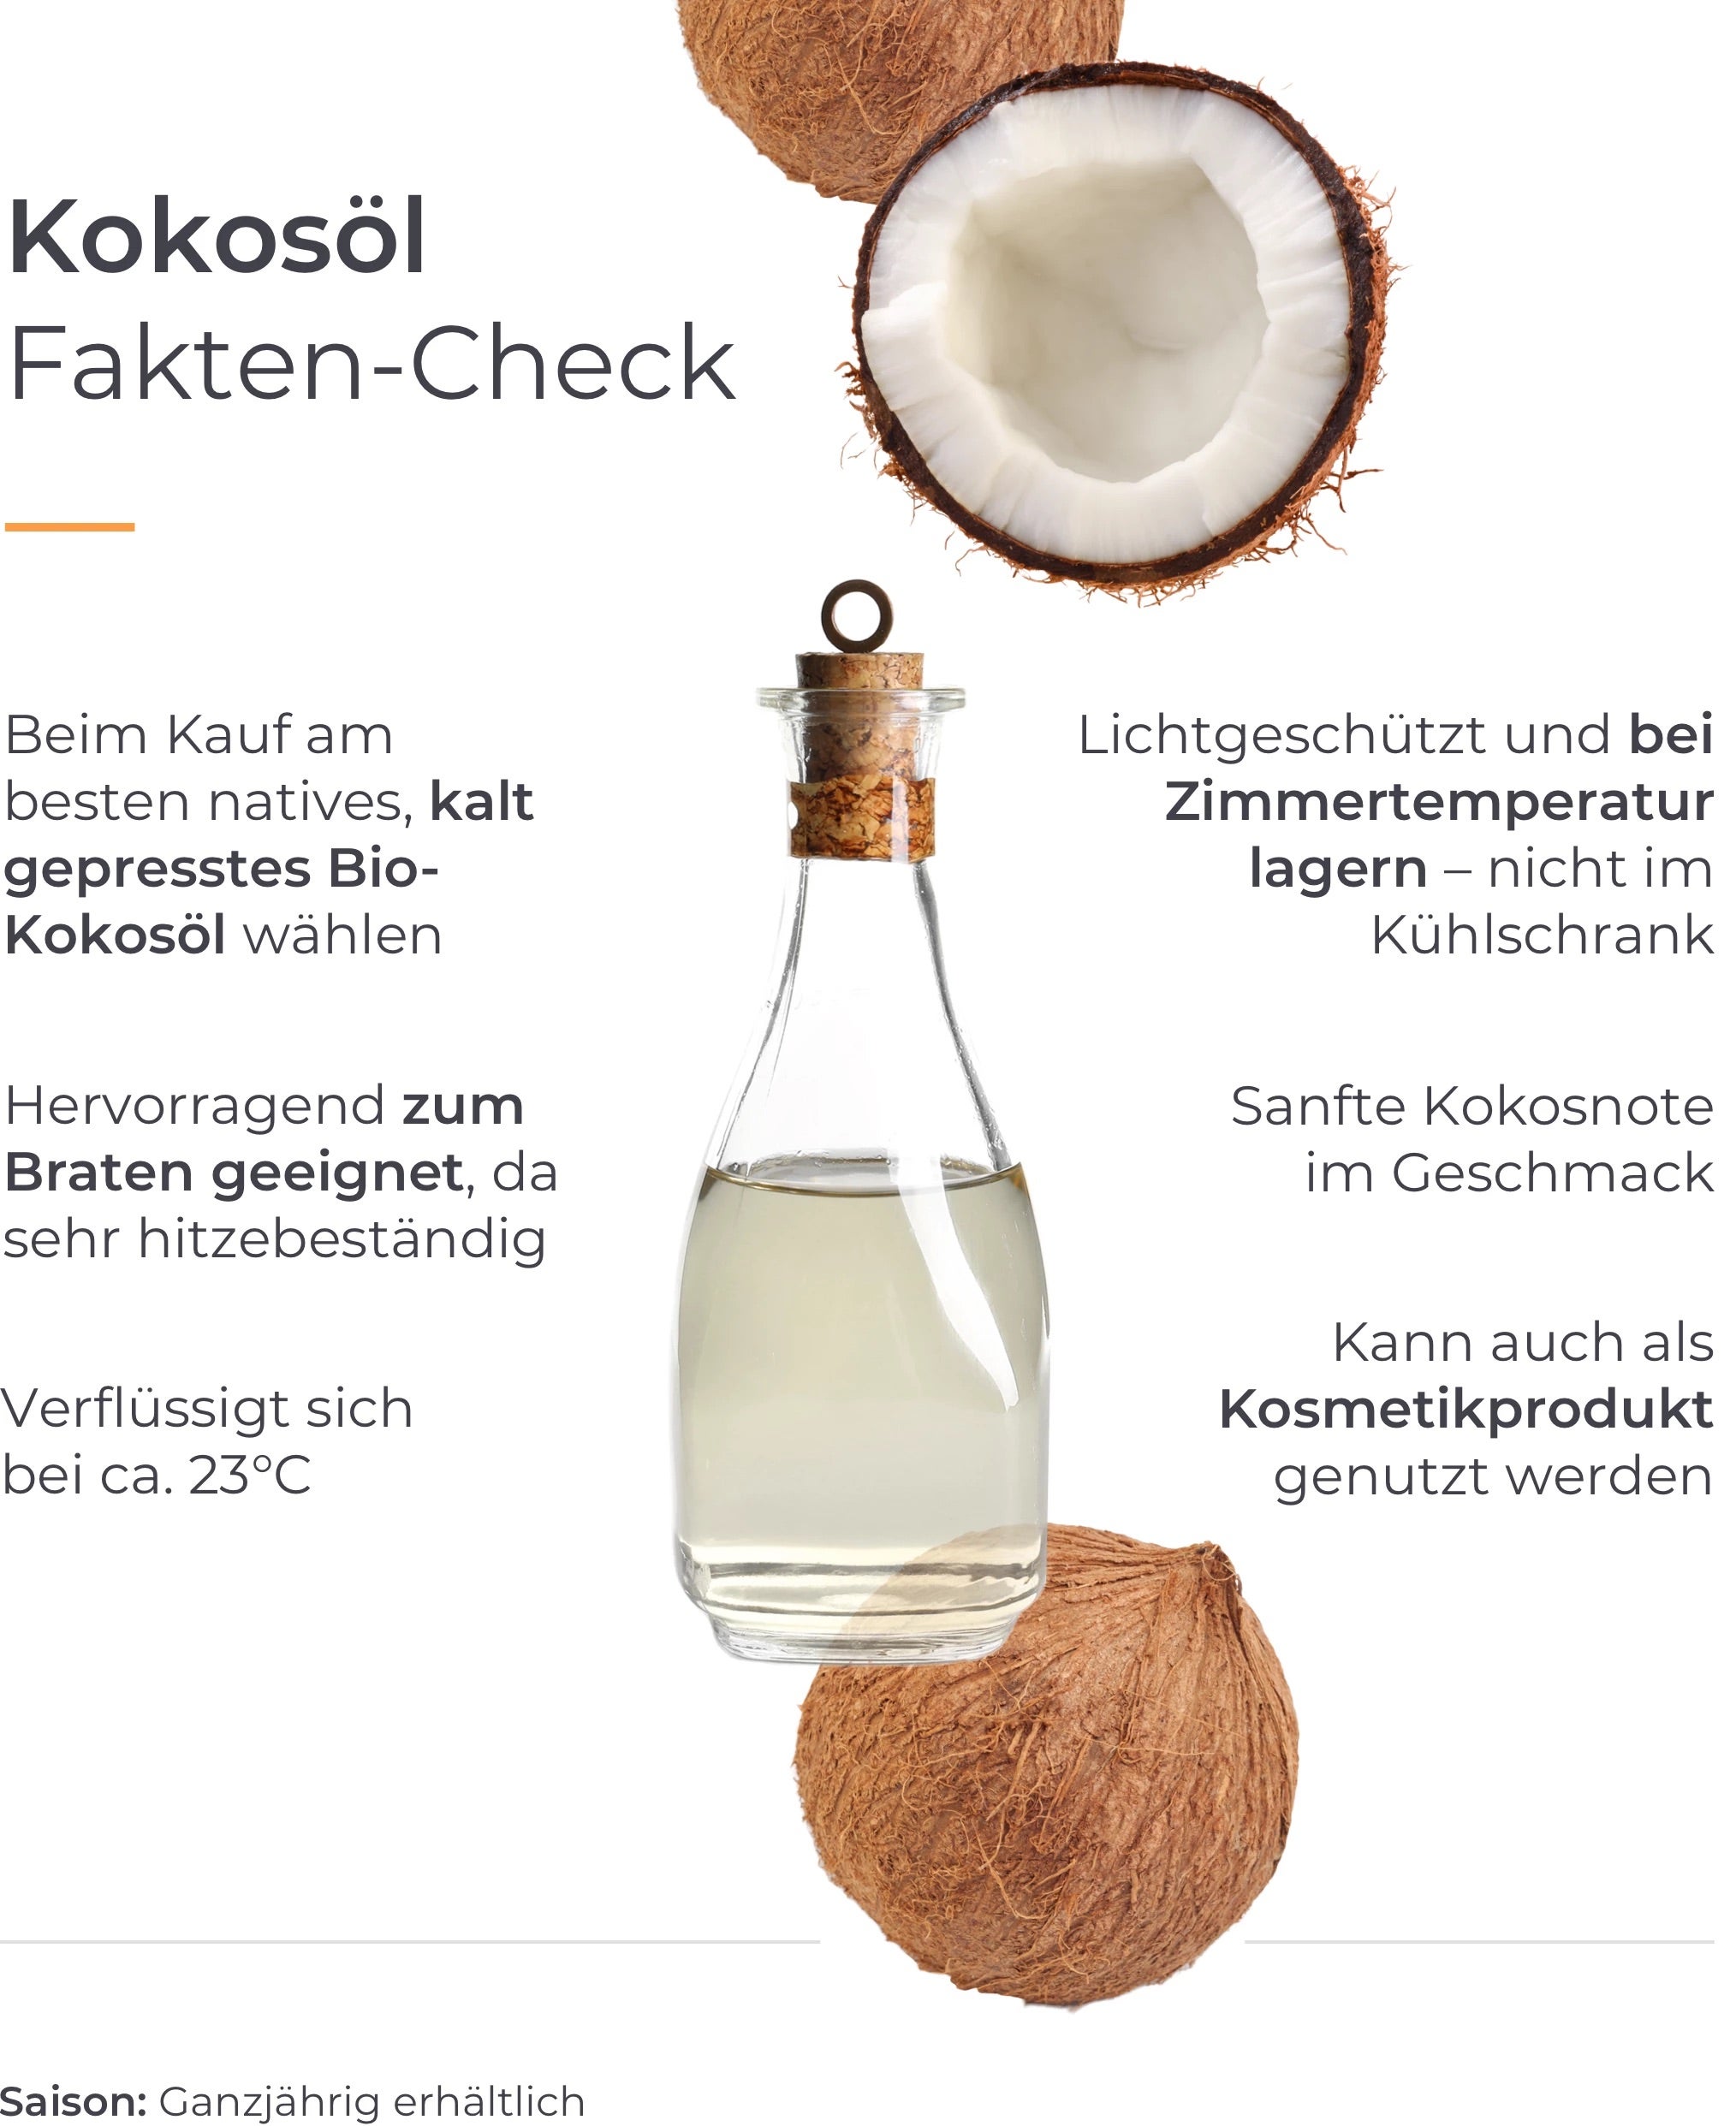 Infografik Fakten-Check Kokosöl